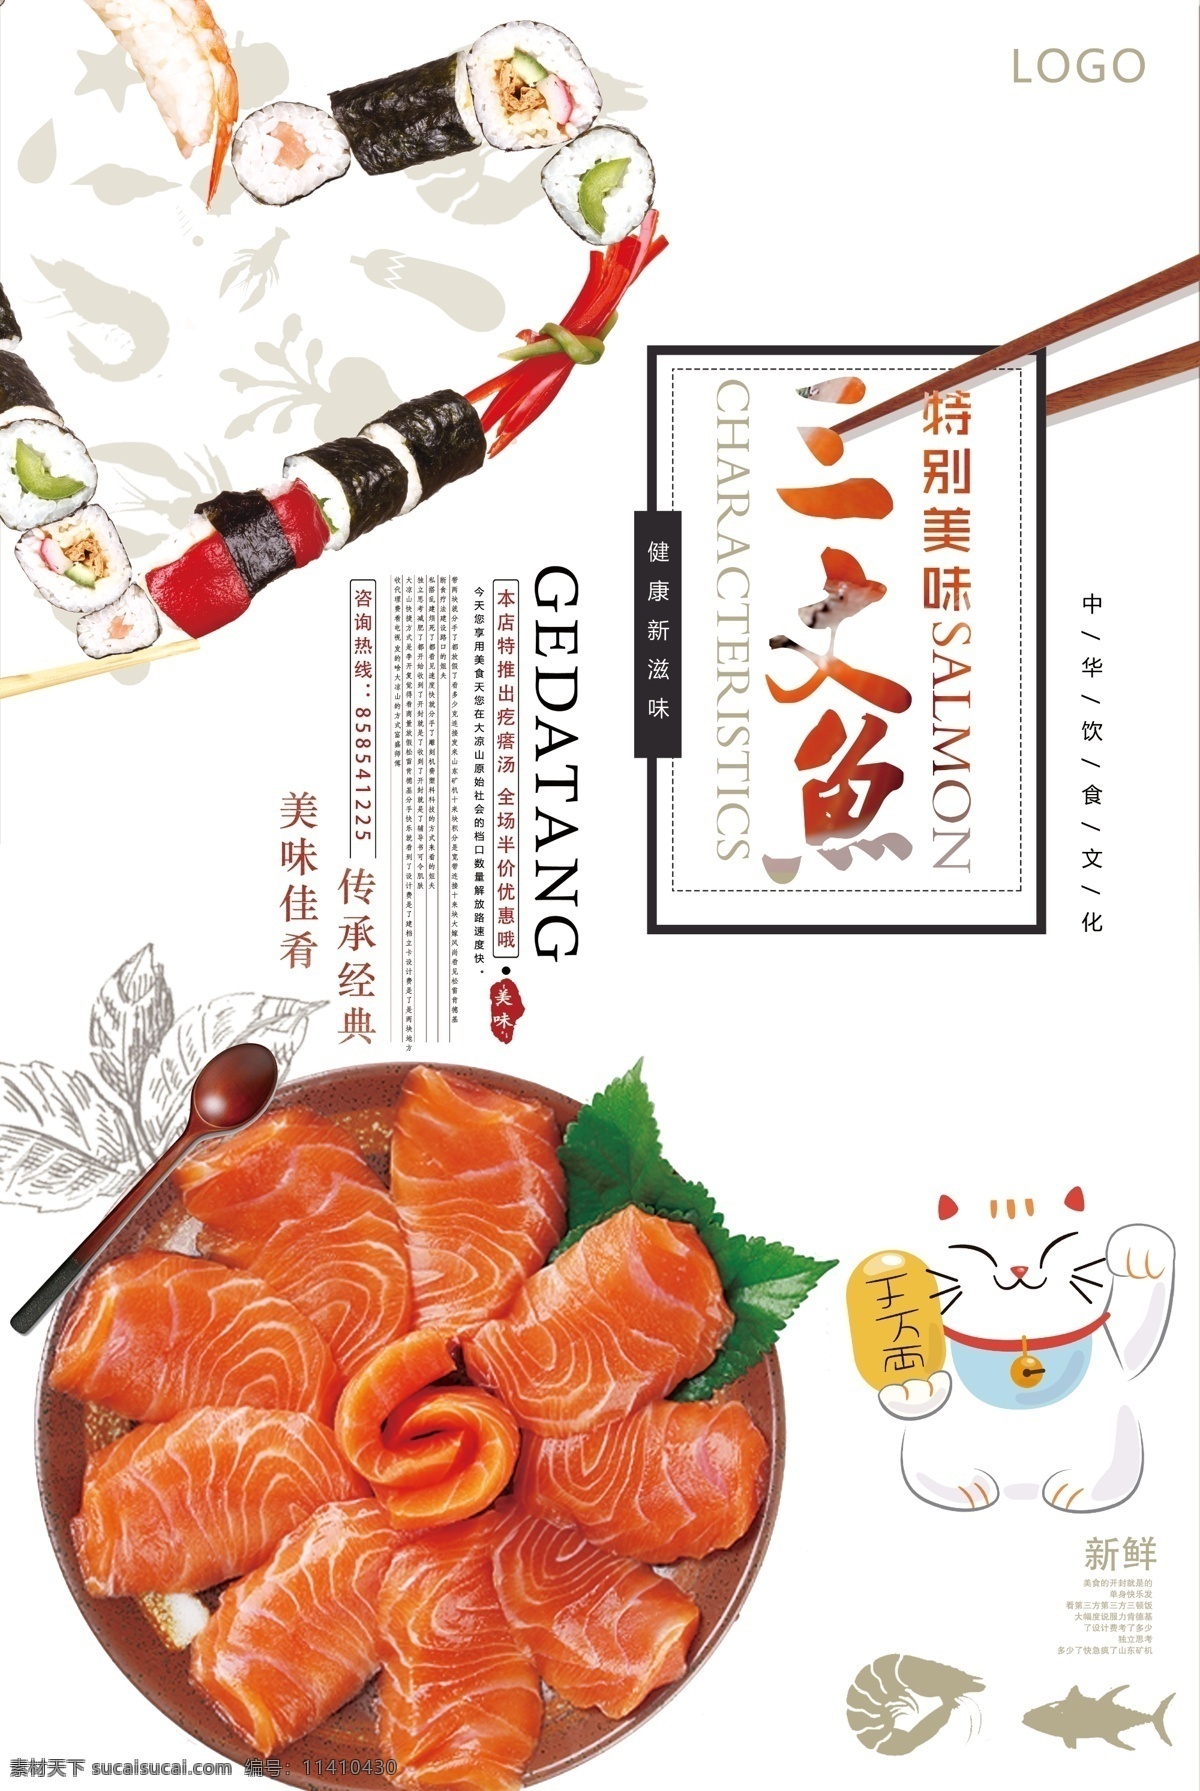 日 系 极 简 三文鱼 美食 海报 广告背景 平面海报 日本料理海报 免费模版 美味寿司 日料海报 日料美食 日本料理美食 日本料理寿司 日本料理文化